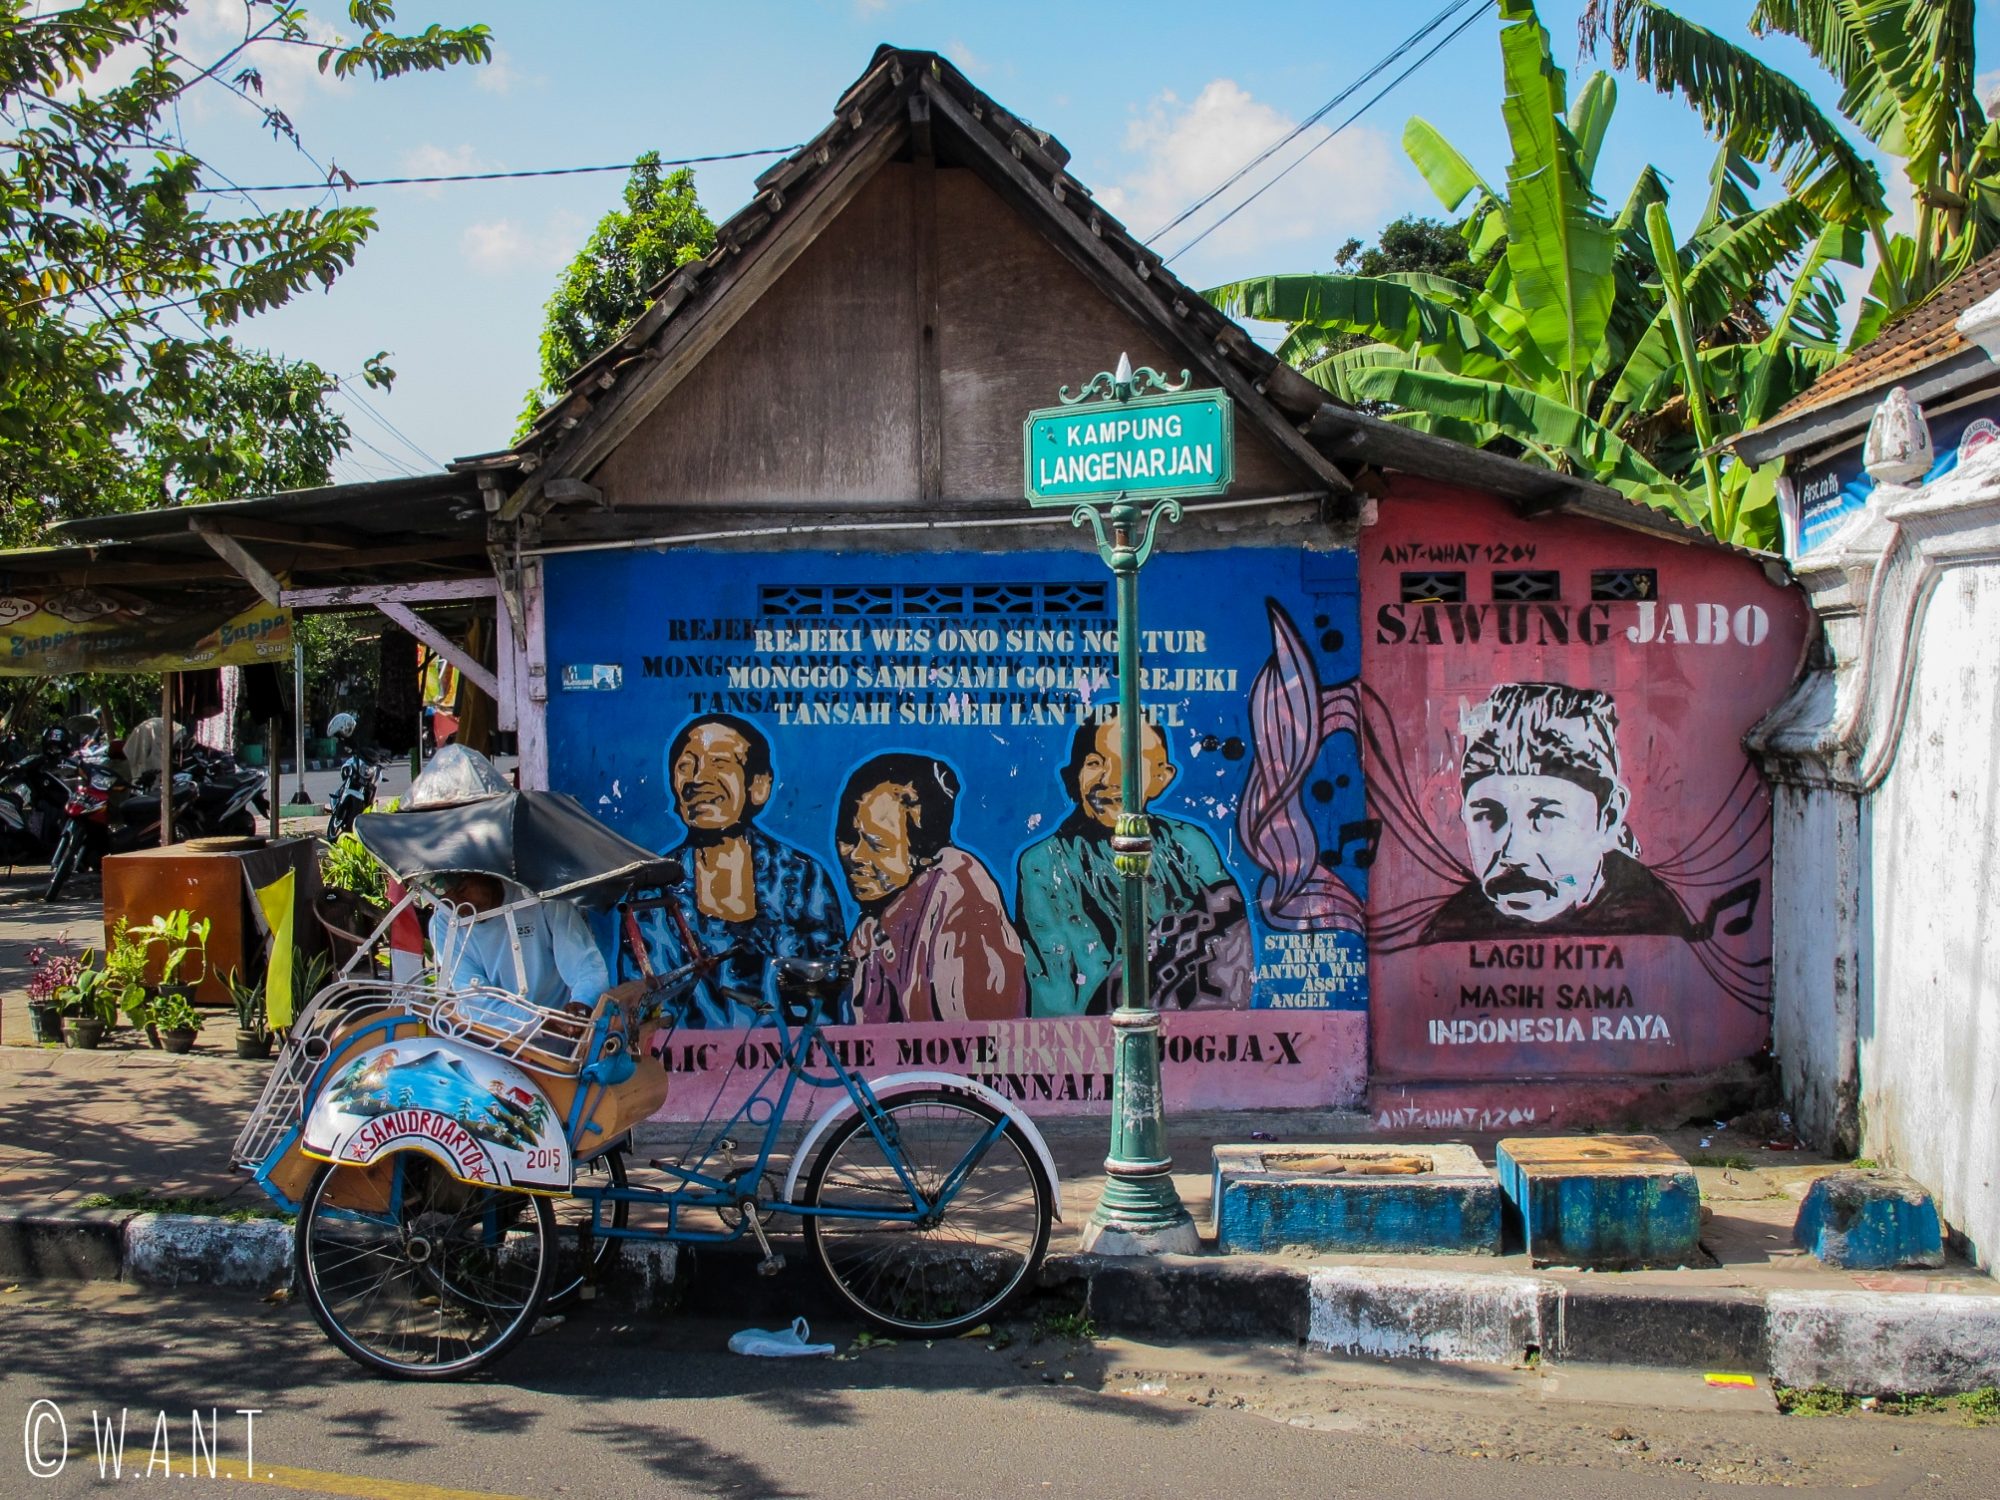 L'art de rue est très présent dans les rues de Yogyakarta